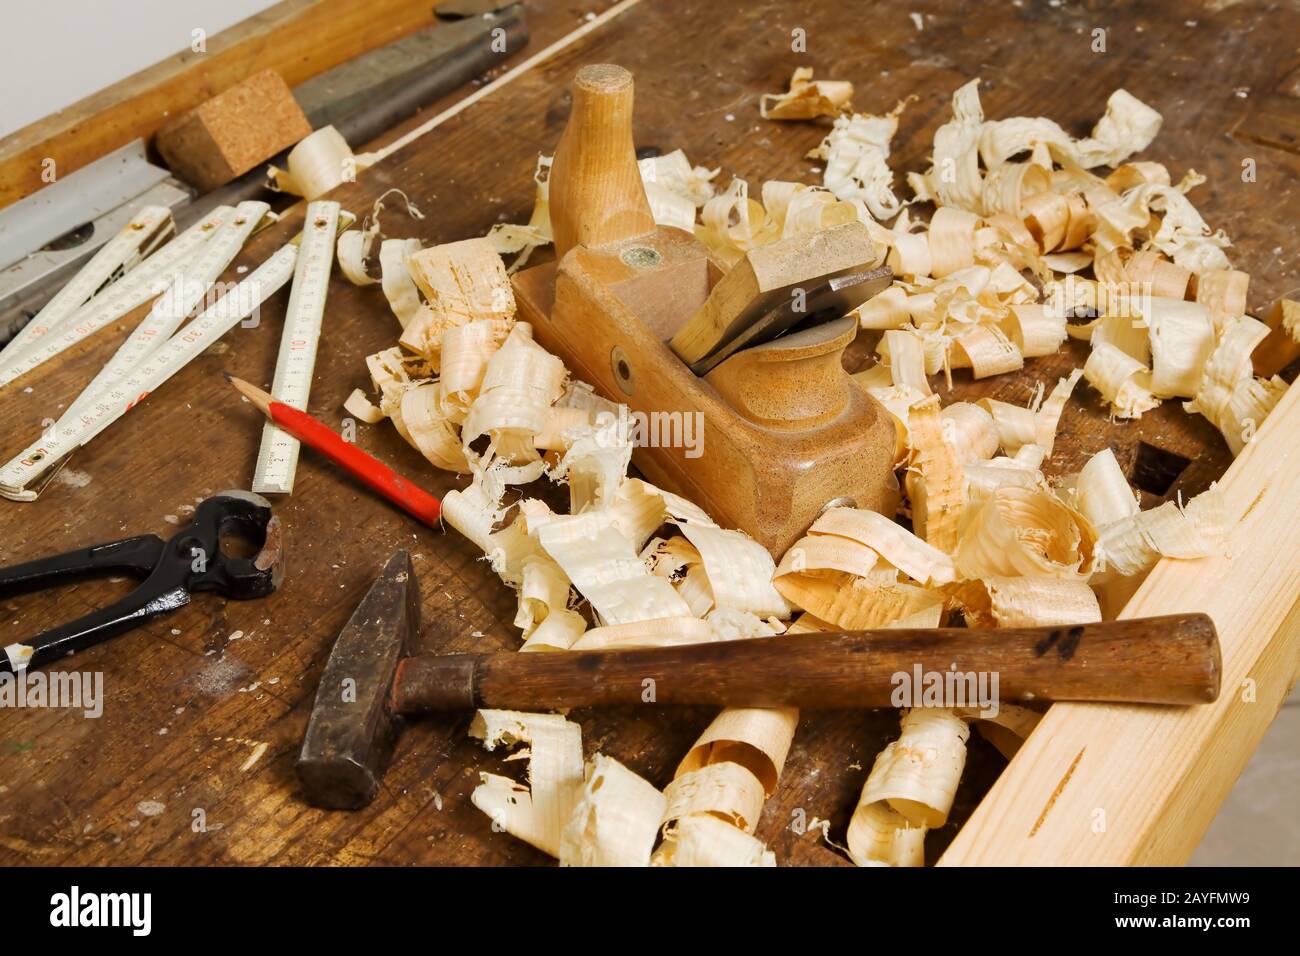 Ein Hobel in einer Schreiner Werkstatt.  Werkzeuge in einer Tischlerei. Stock Photo